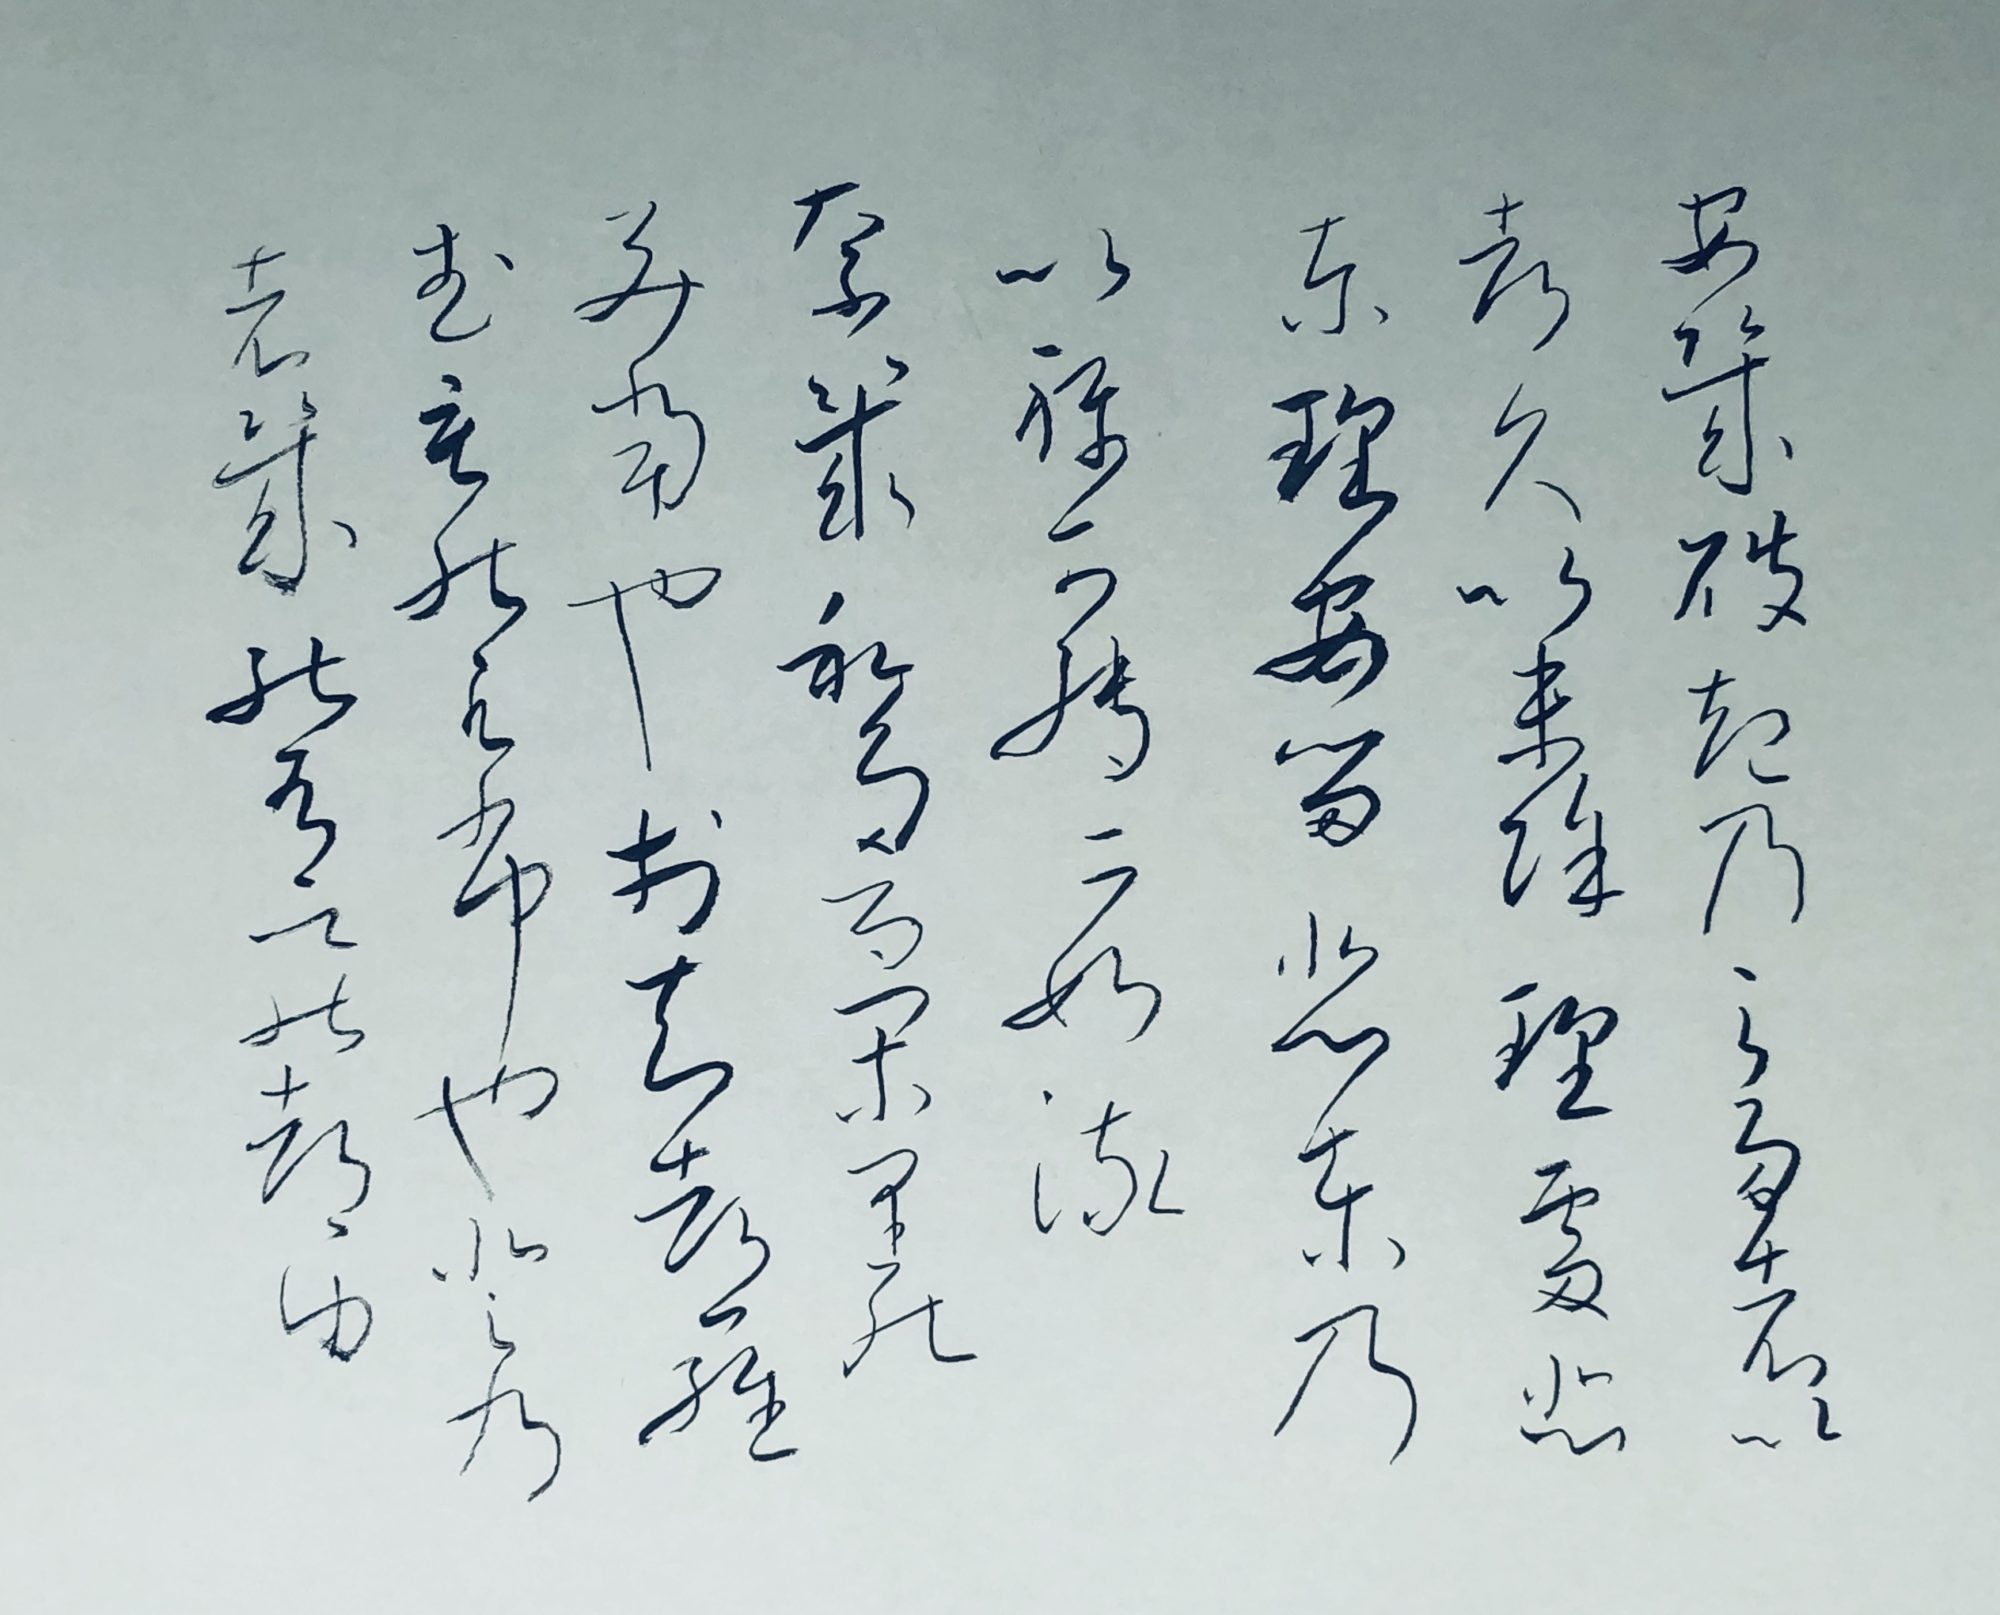 良寛さんの書「天上大風」(3) | 書・森田 祥香